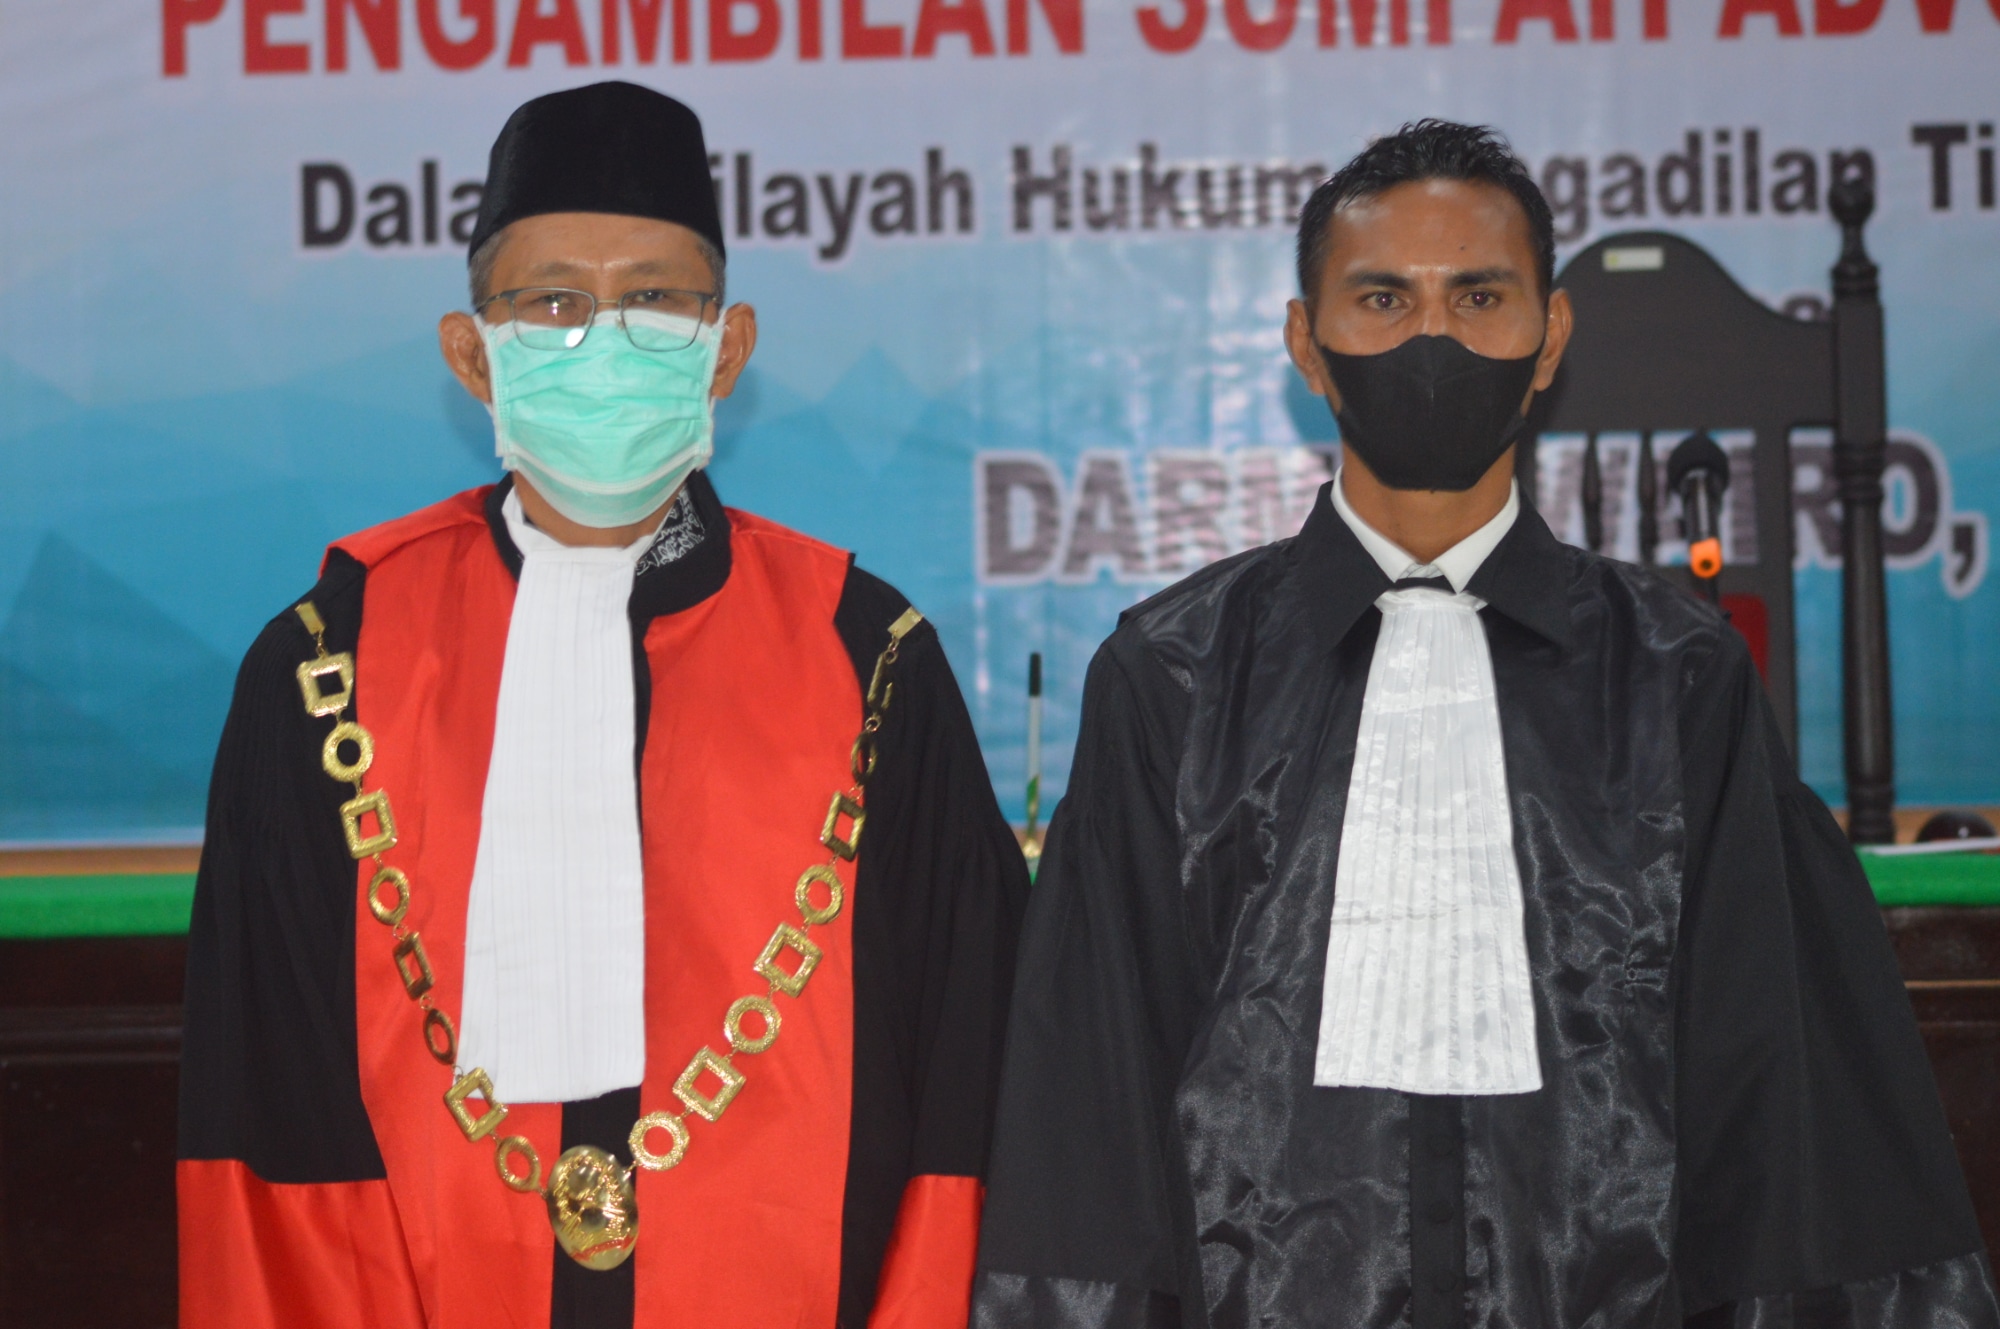 Pengambilan Sumpah Advokat dari Perkumpulan Advokat dan Pengacara Nusantara (PERADAN)